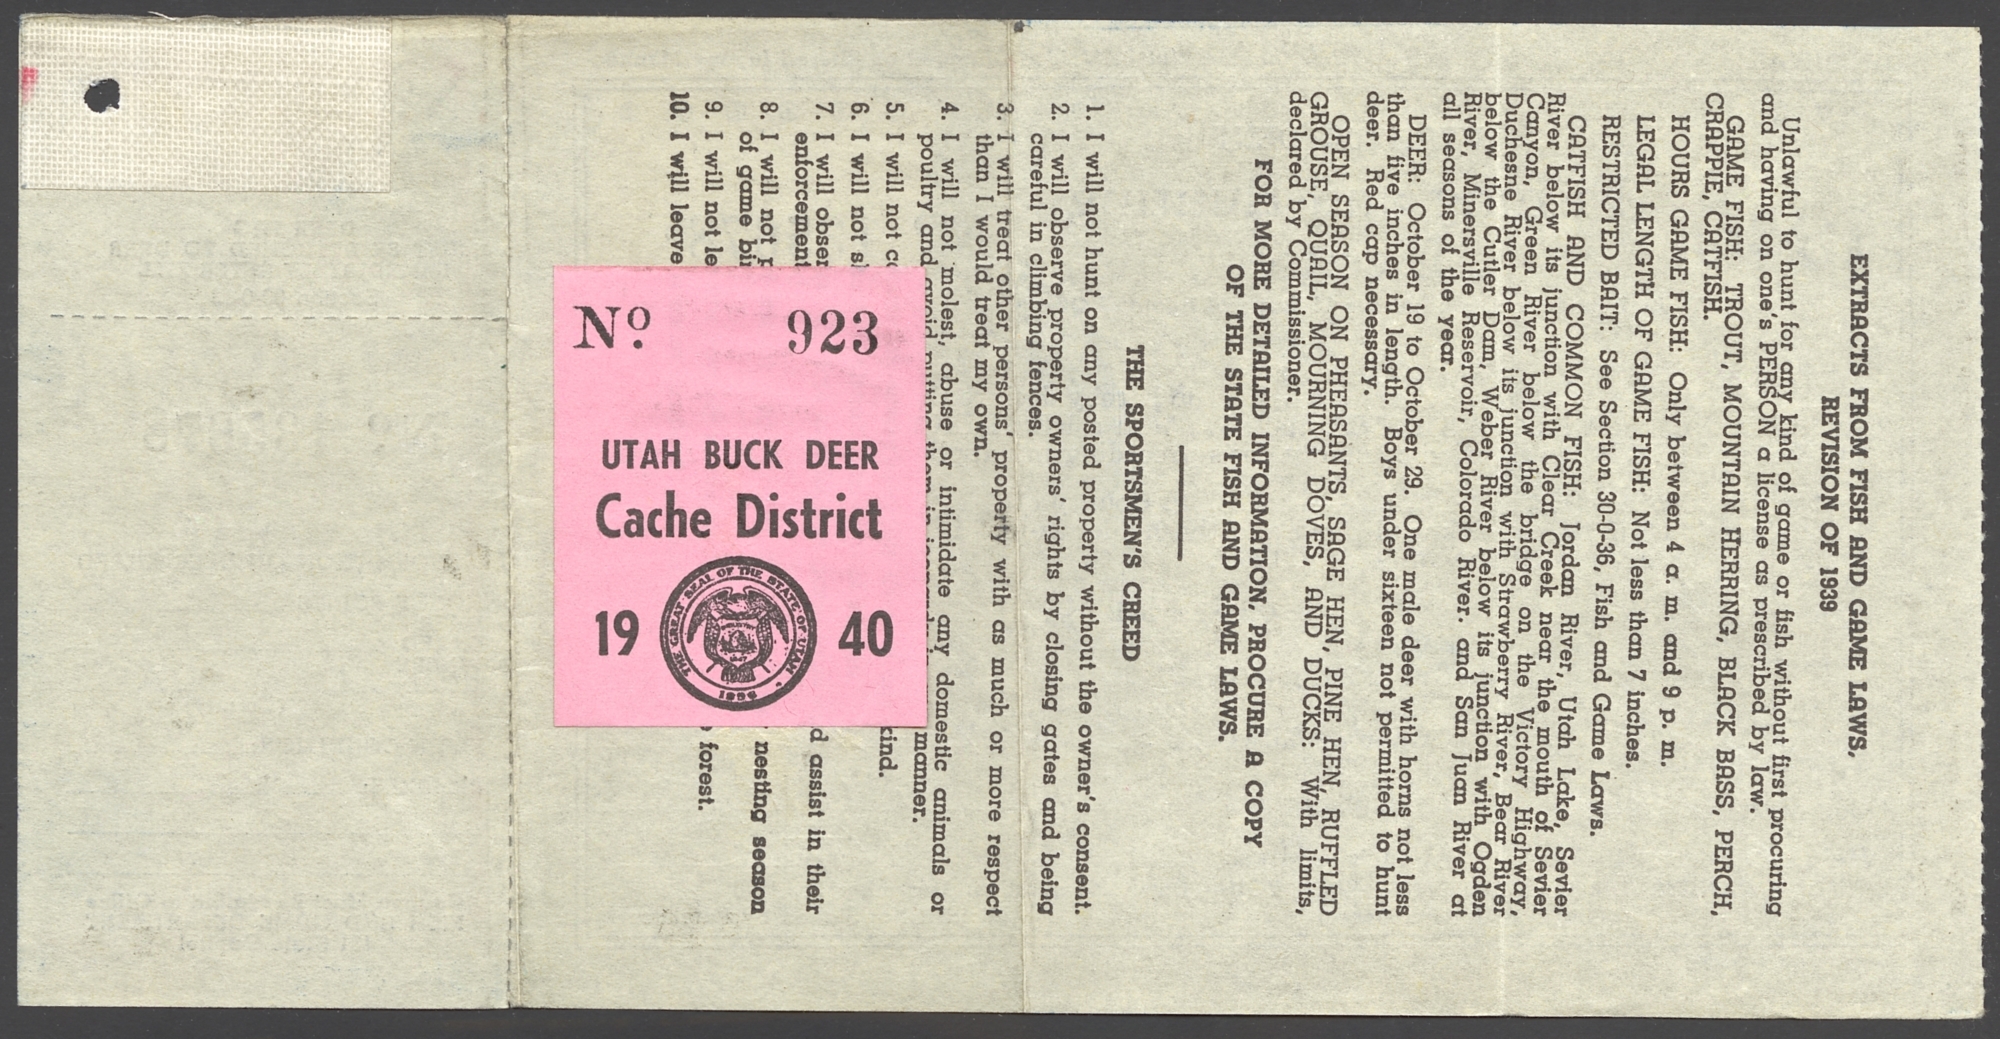 1940 Utah Buck Deer - Cache District on license